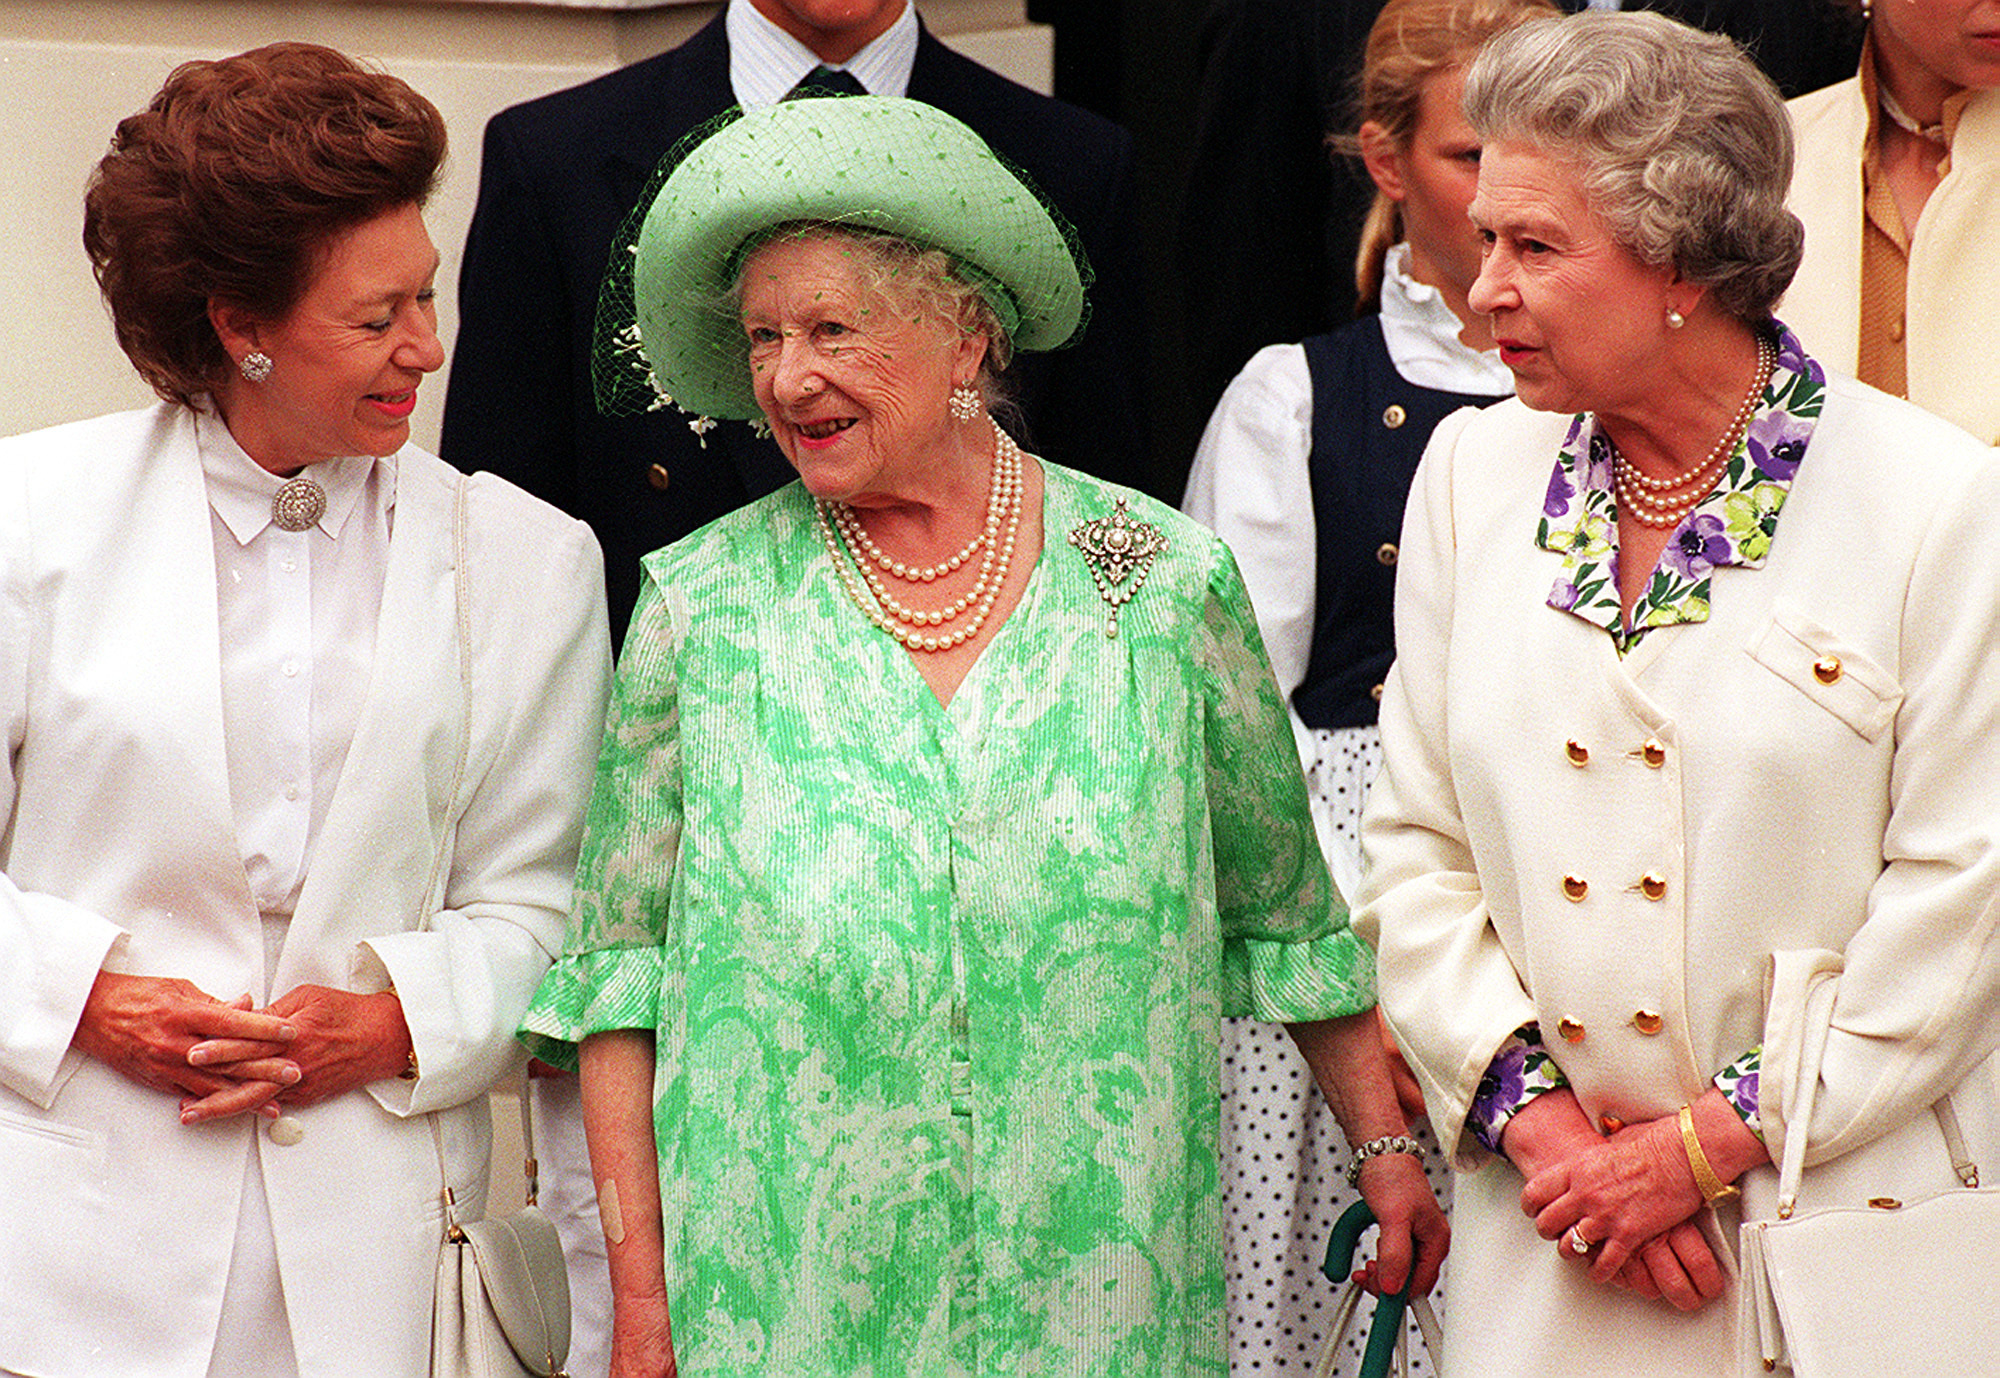 La reina madre flanqueada por sus dos hijas, la reina Isabel y la princesa Margarita.